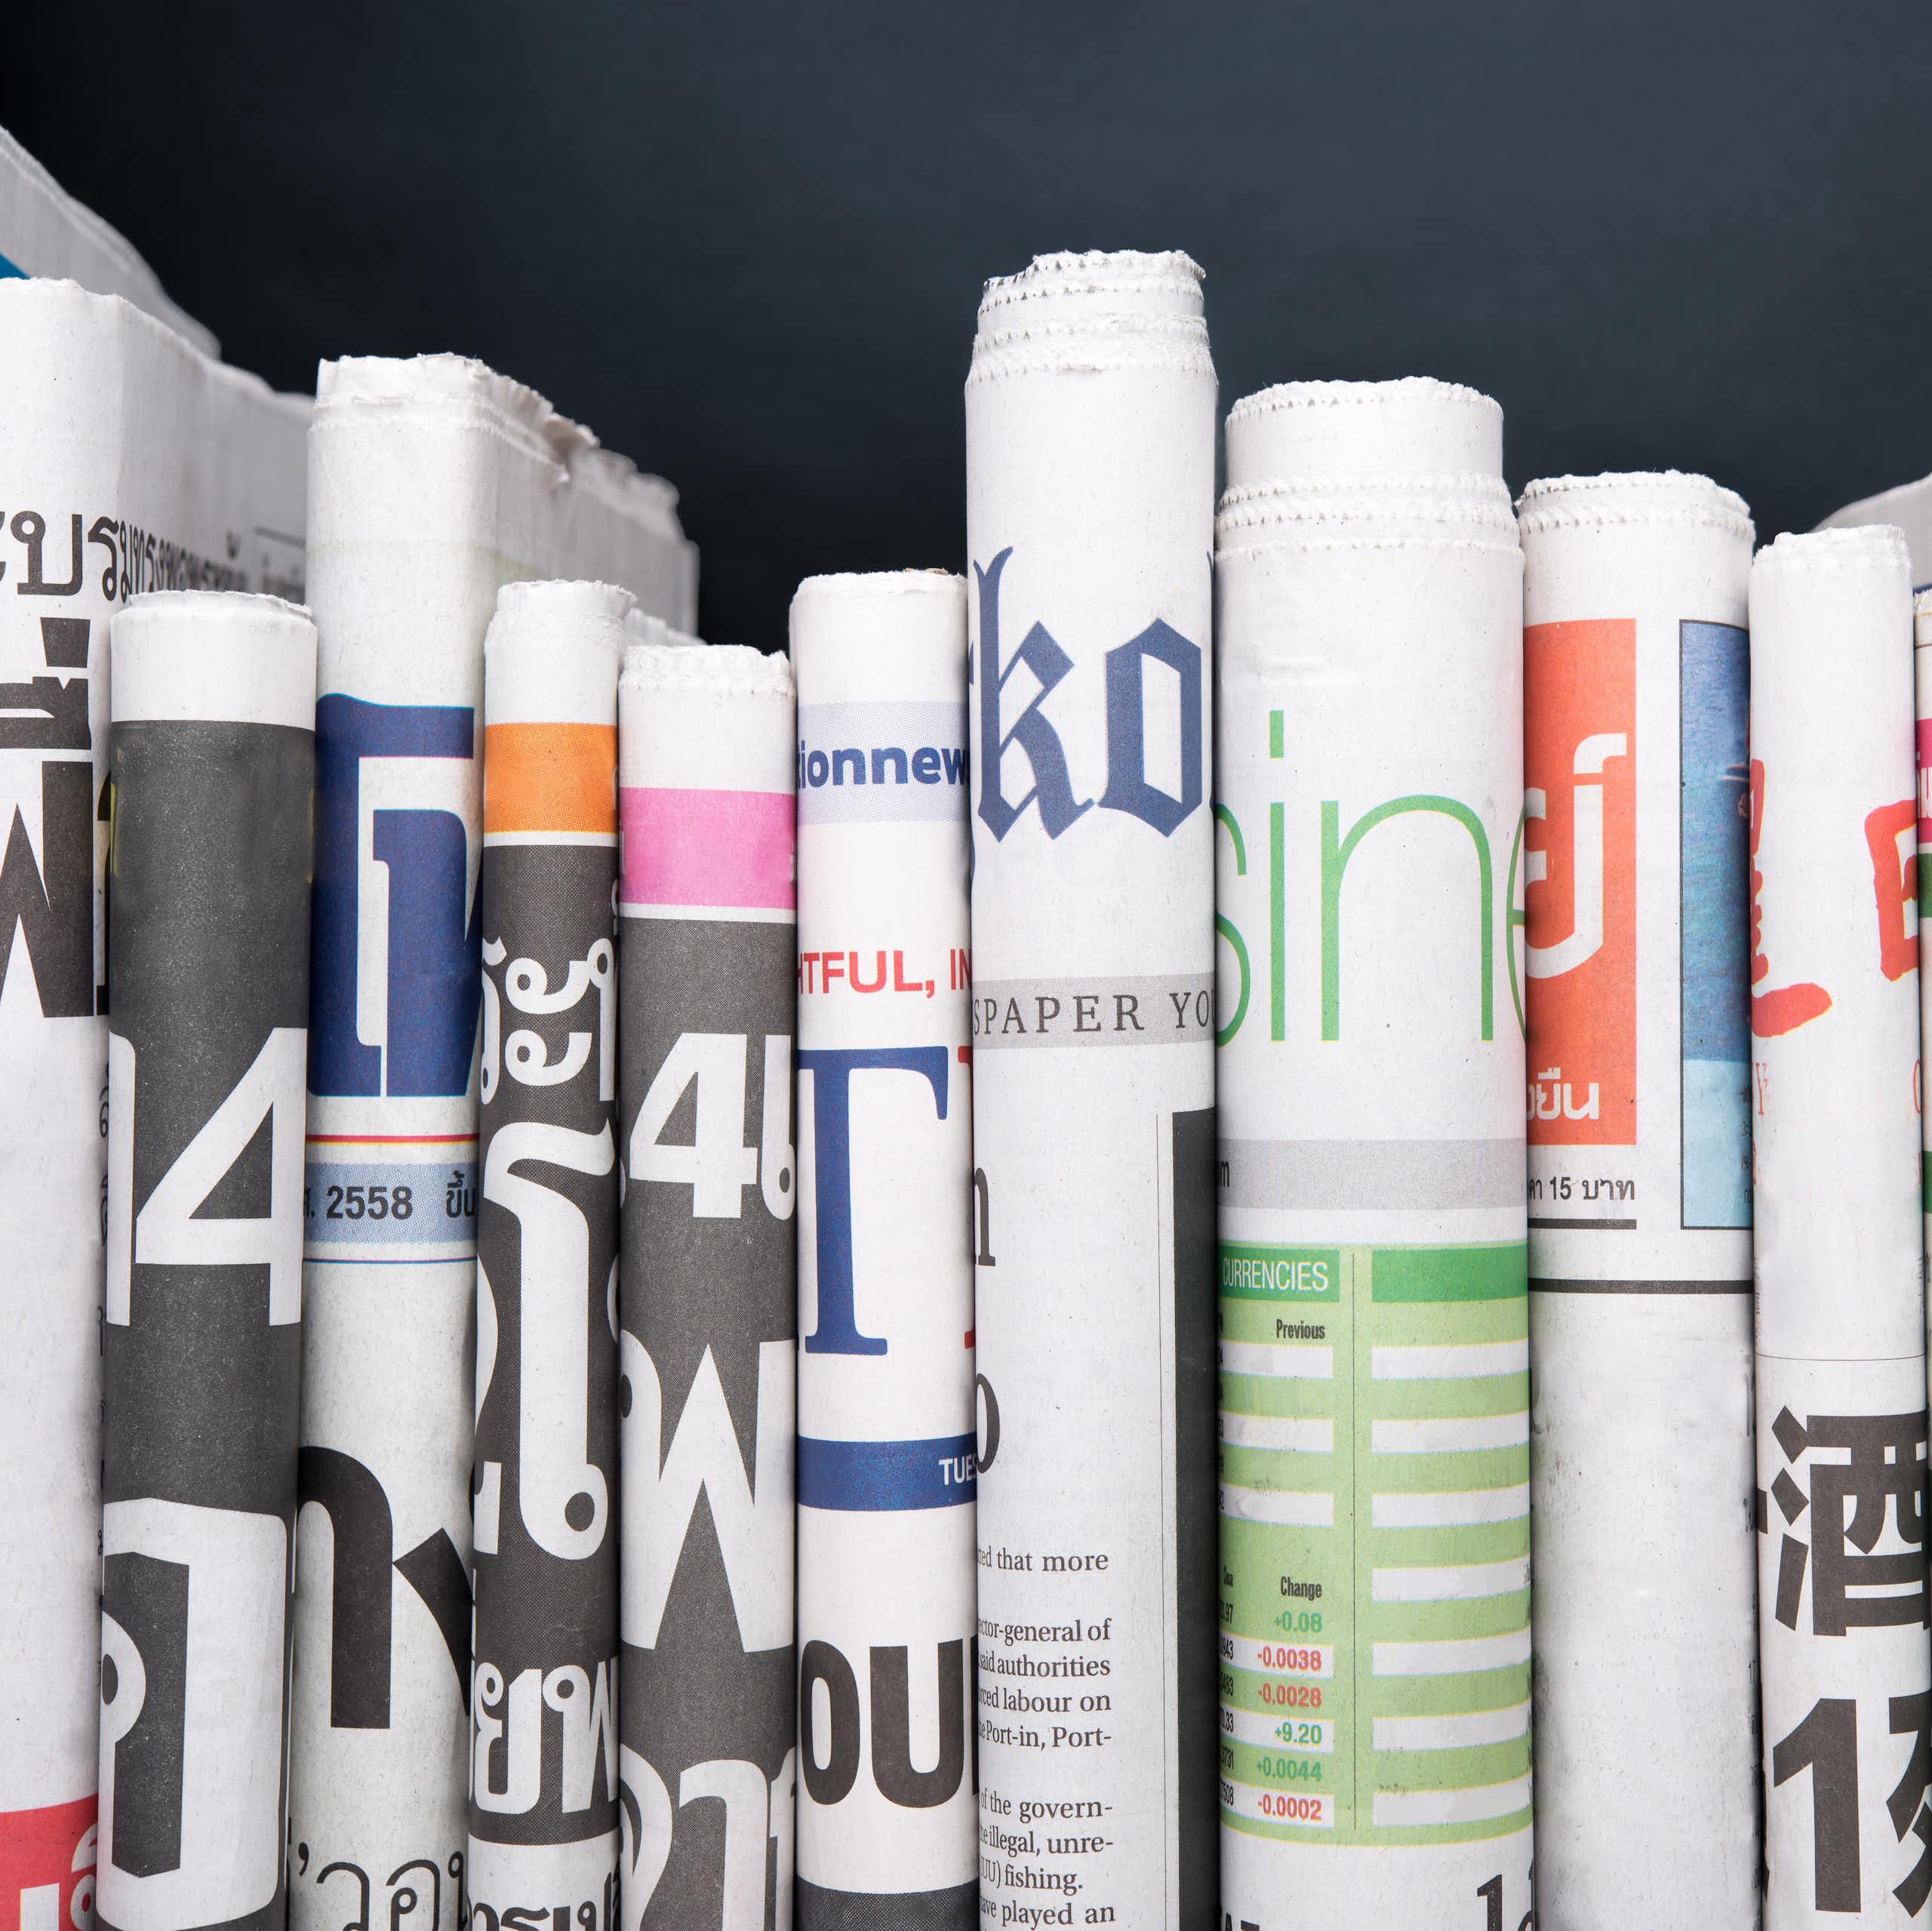 ‘Publisher’s rights’: meningkatkan atau menghambat jurnalisme berkualitas?